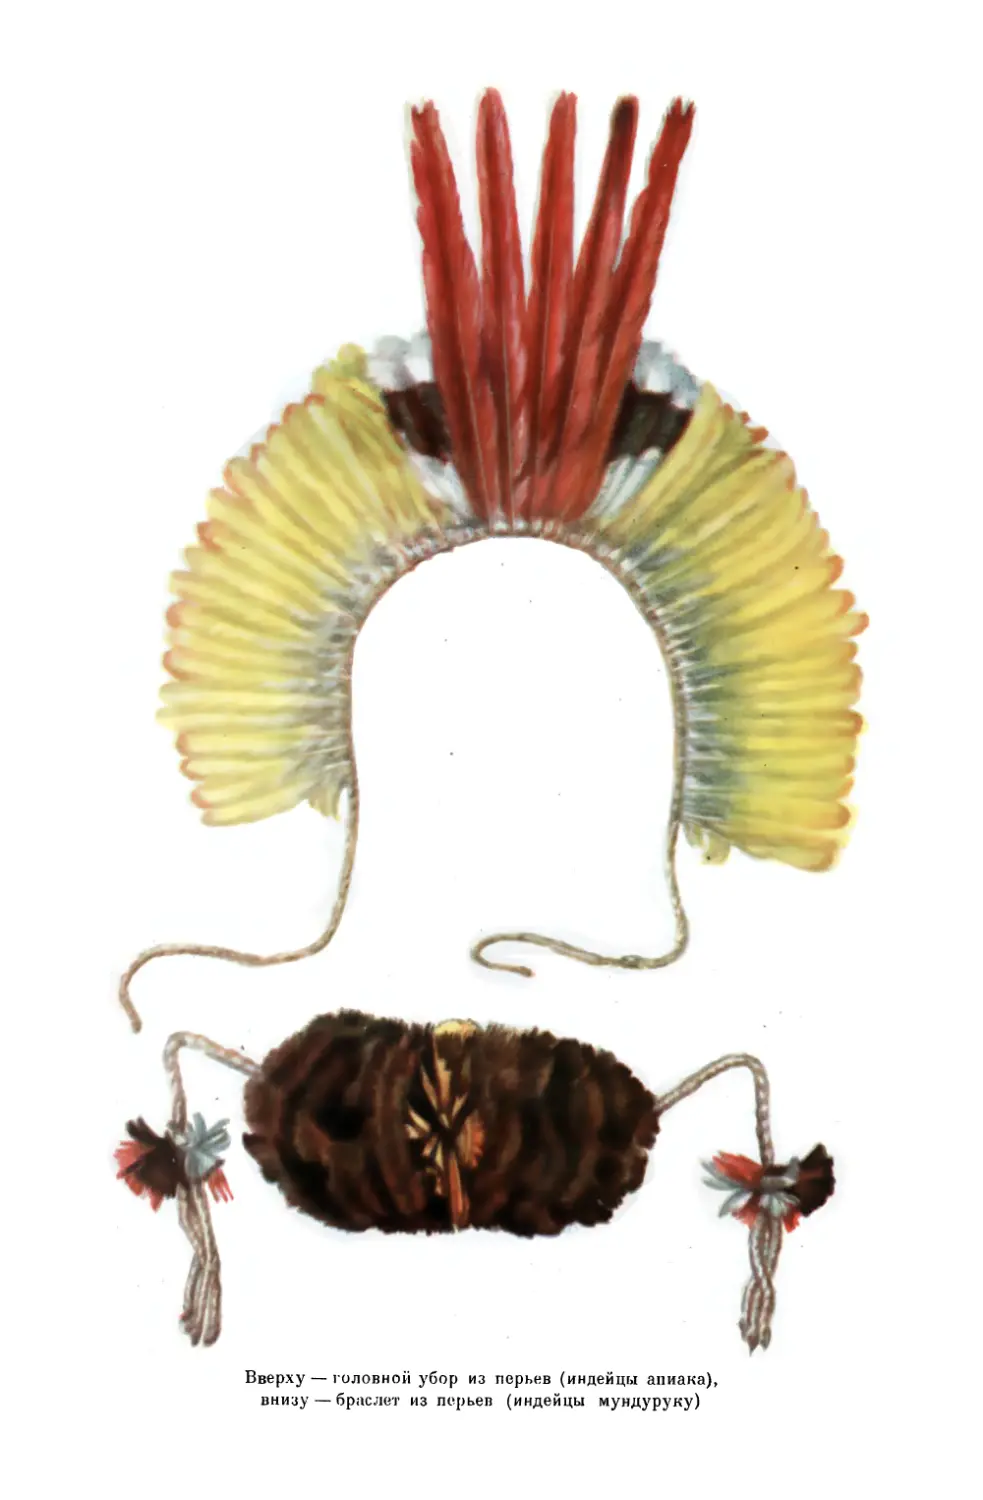 Вклейка. Головной убор из перьев, индейцы апиака; браслет из перьев, индейцы мундуруку